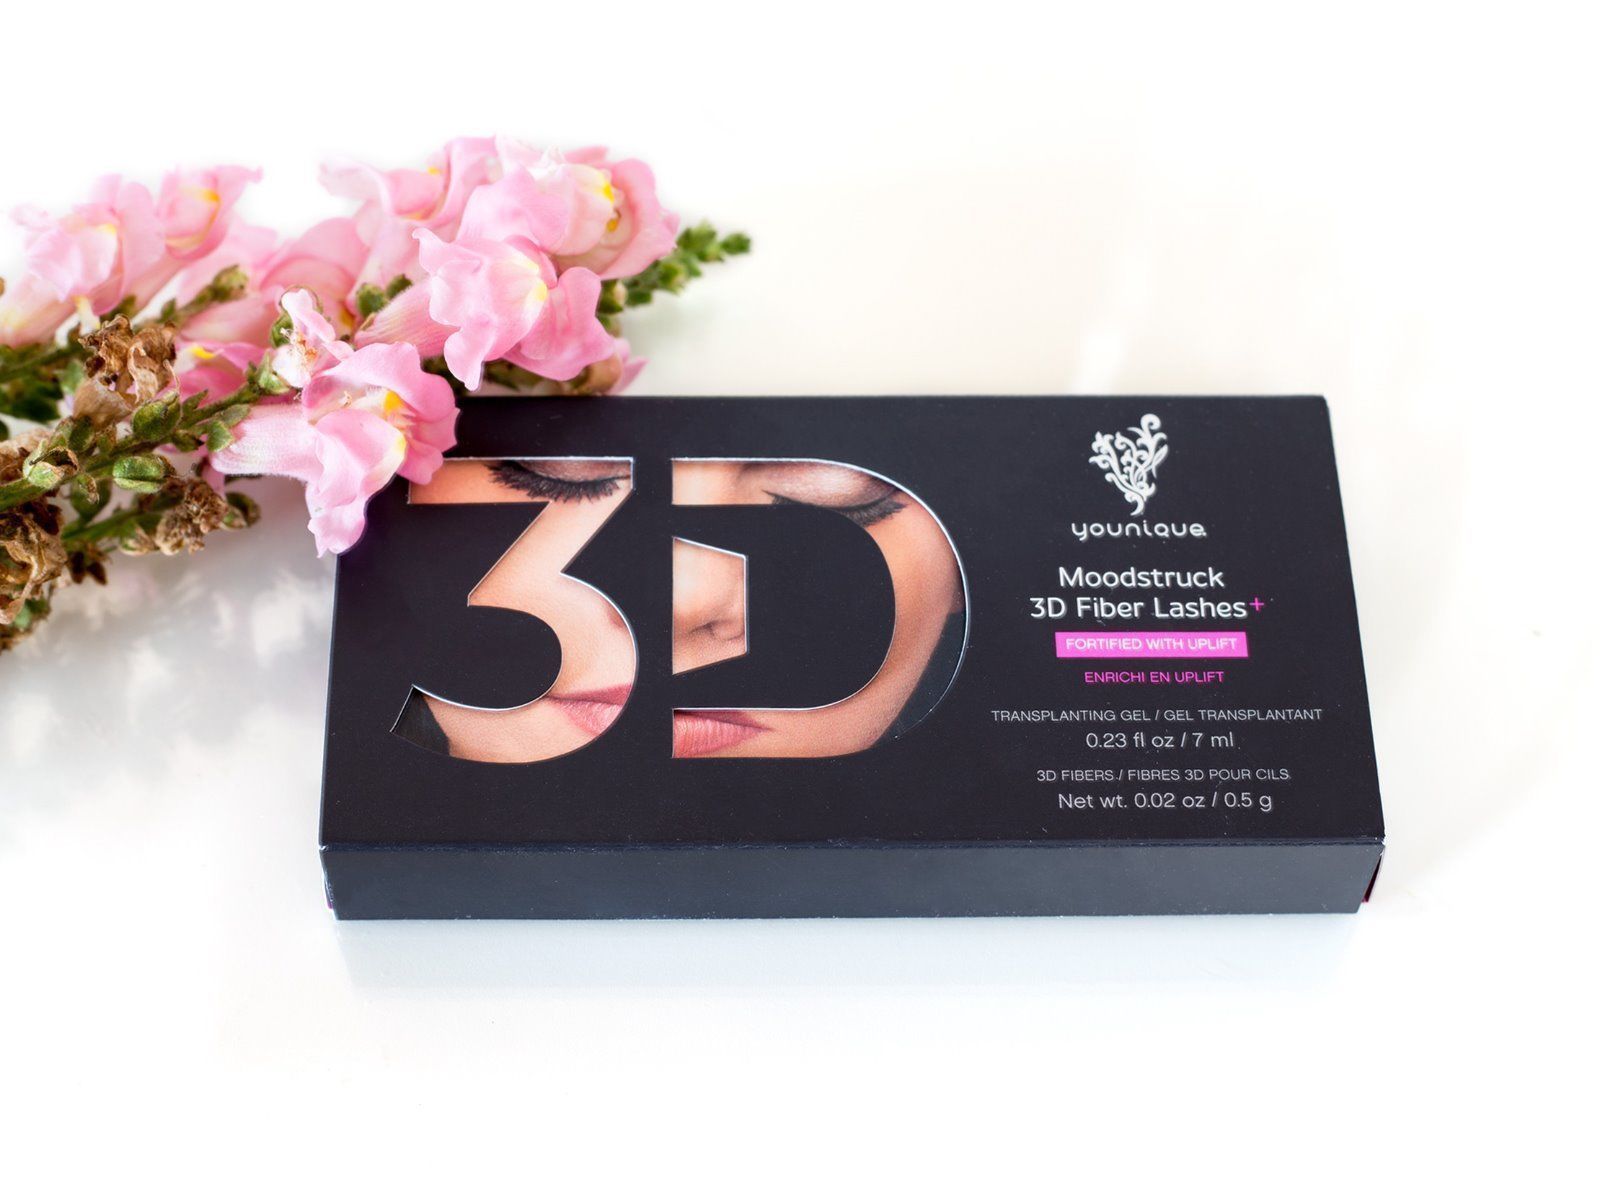 Younique Moodstruck 3D Fiber Lash Mascara Plus 400% Wimperntusche NEU & OVP